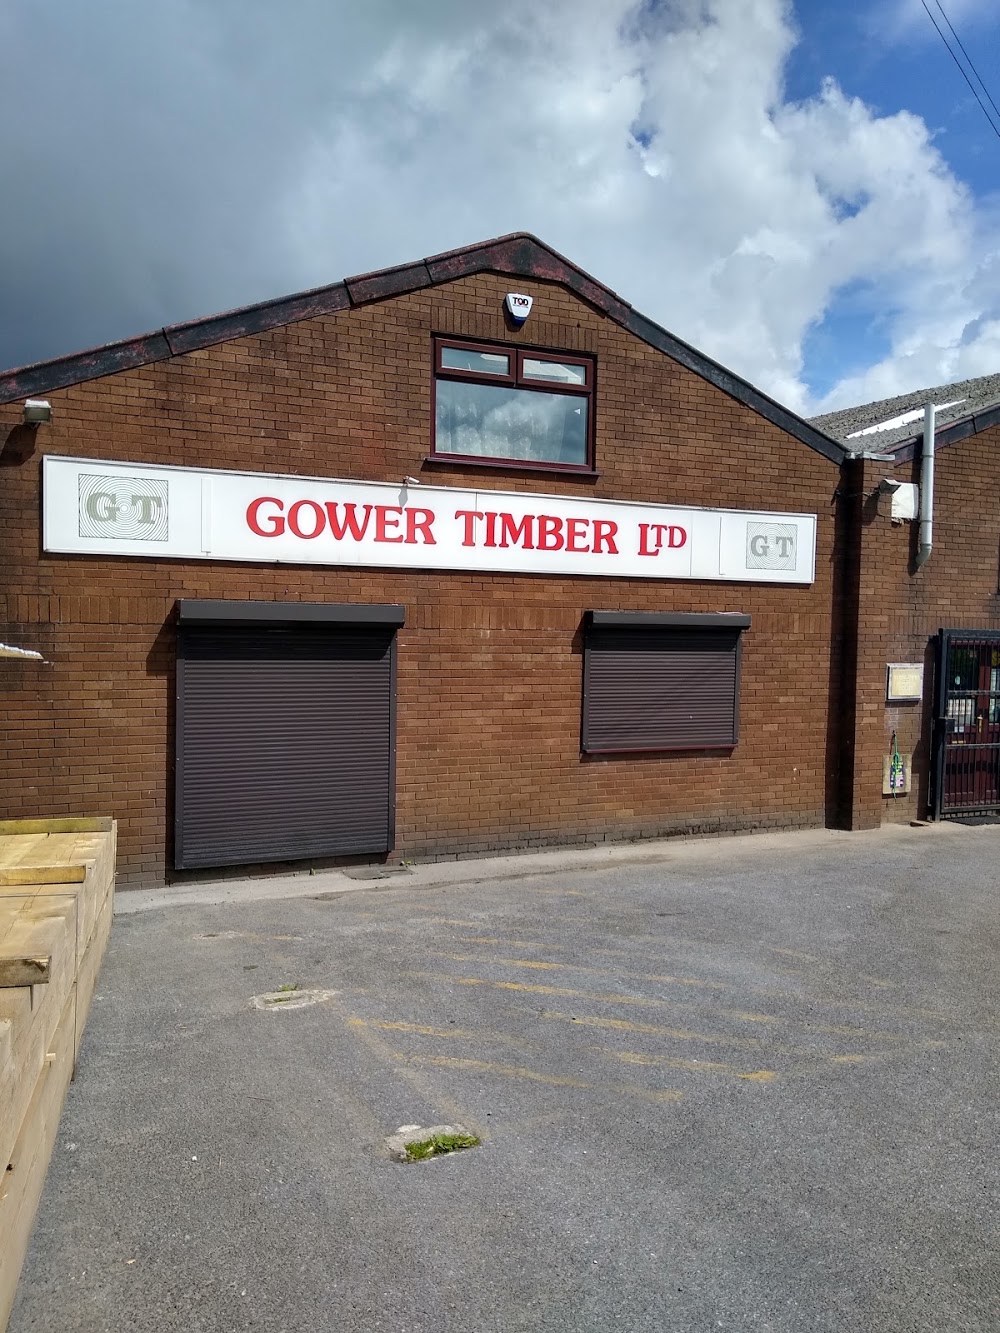 Gower Timber Ltd